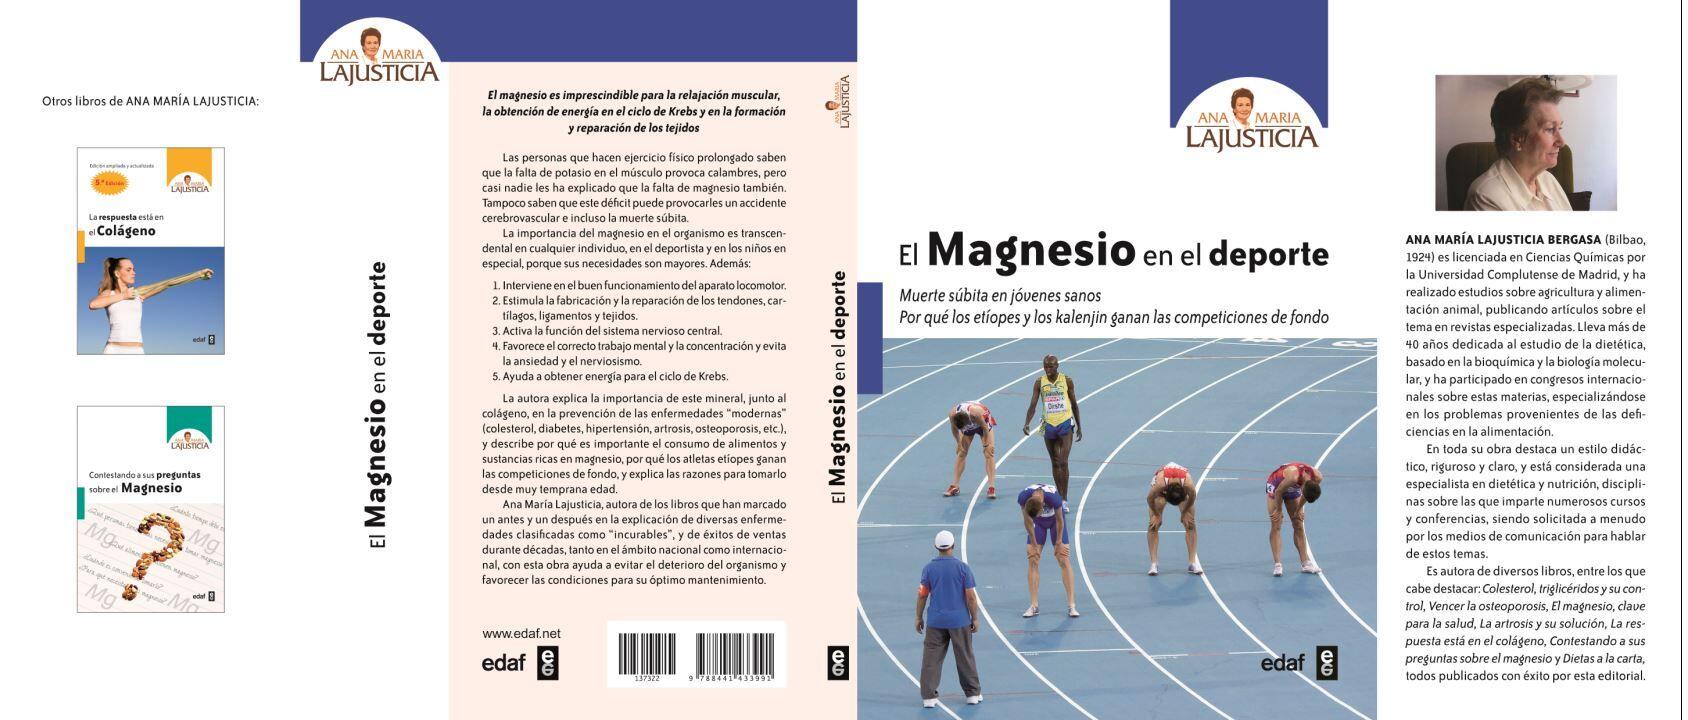 Magnesium im Sport